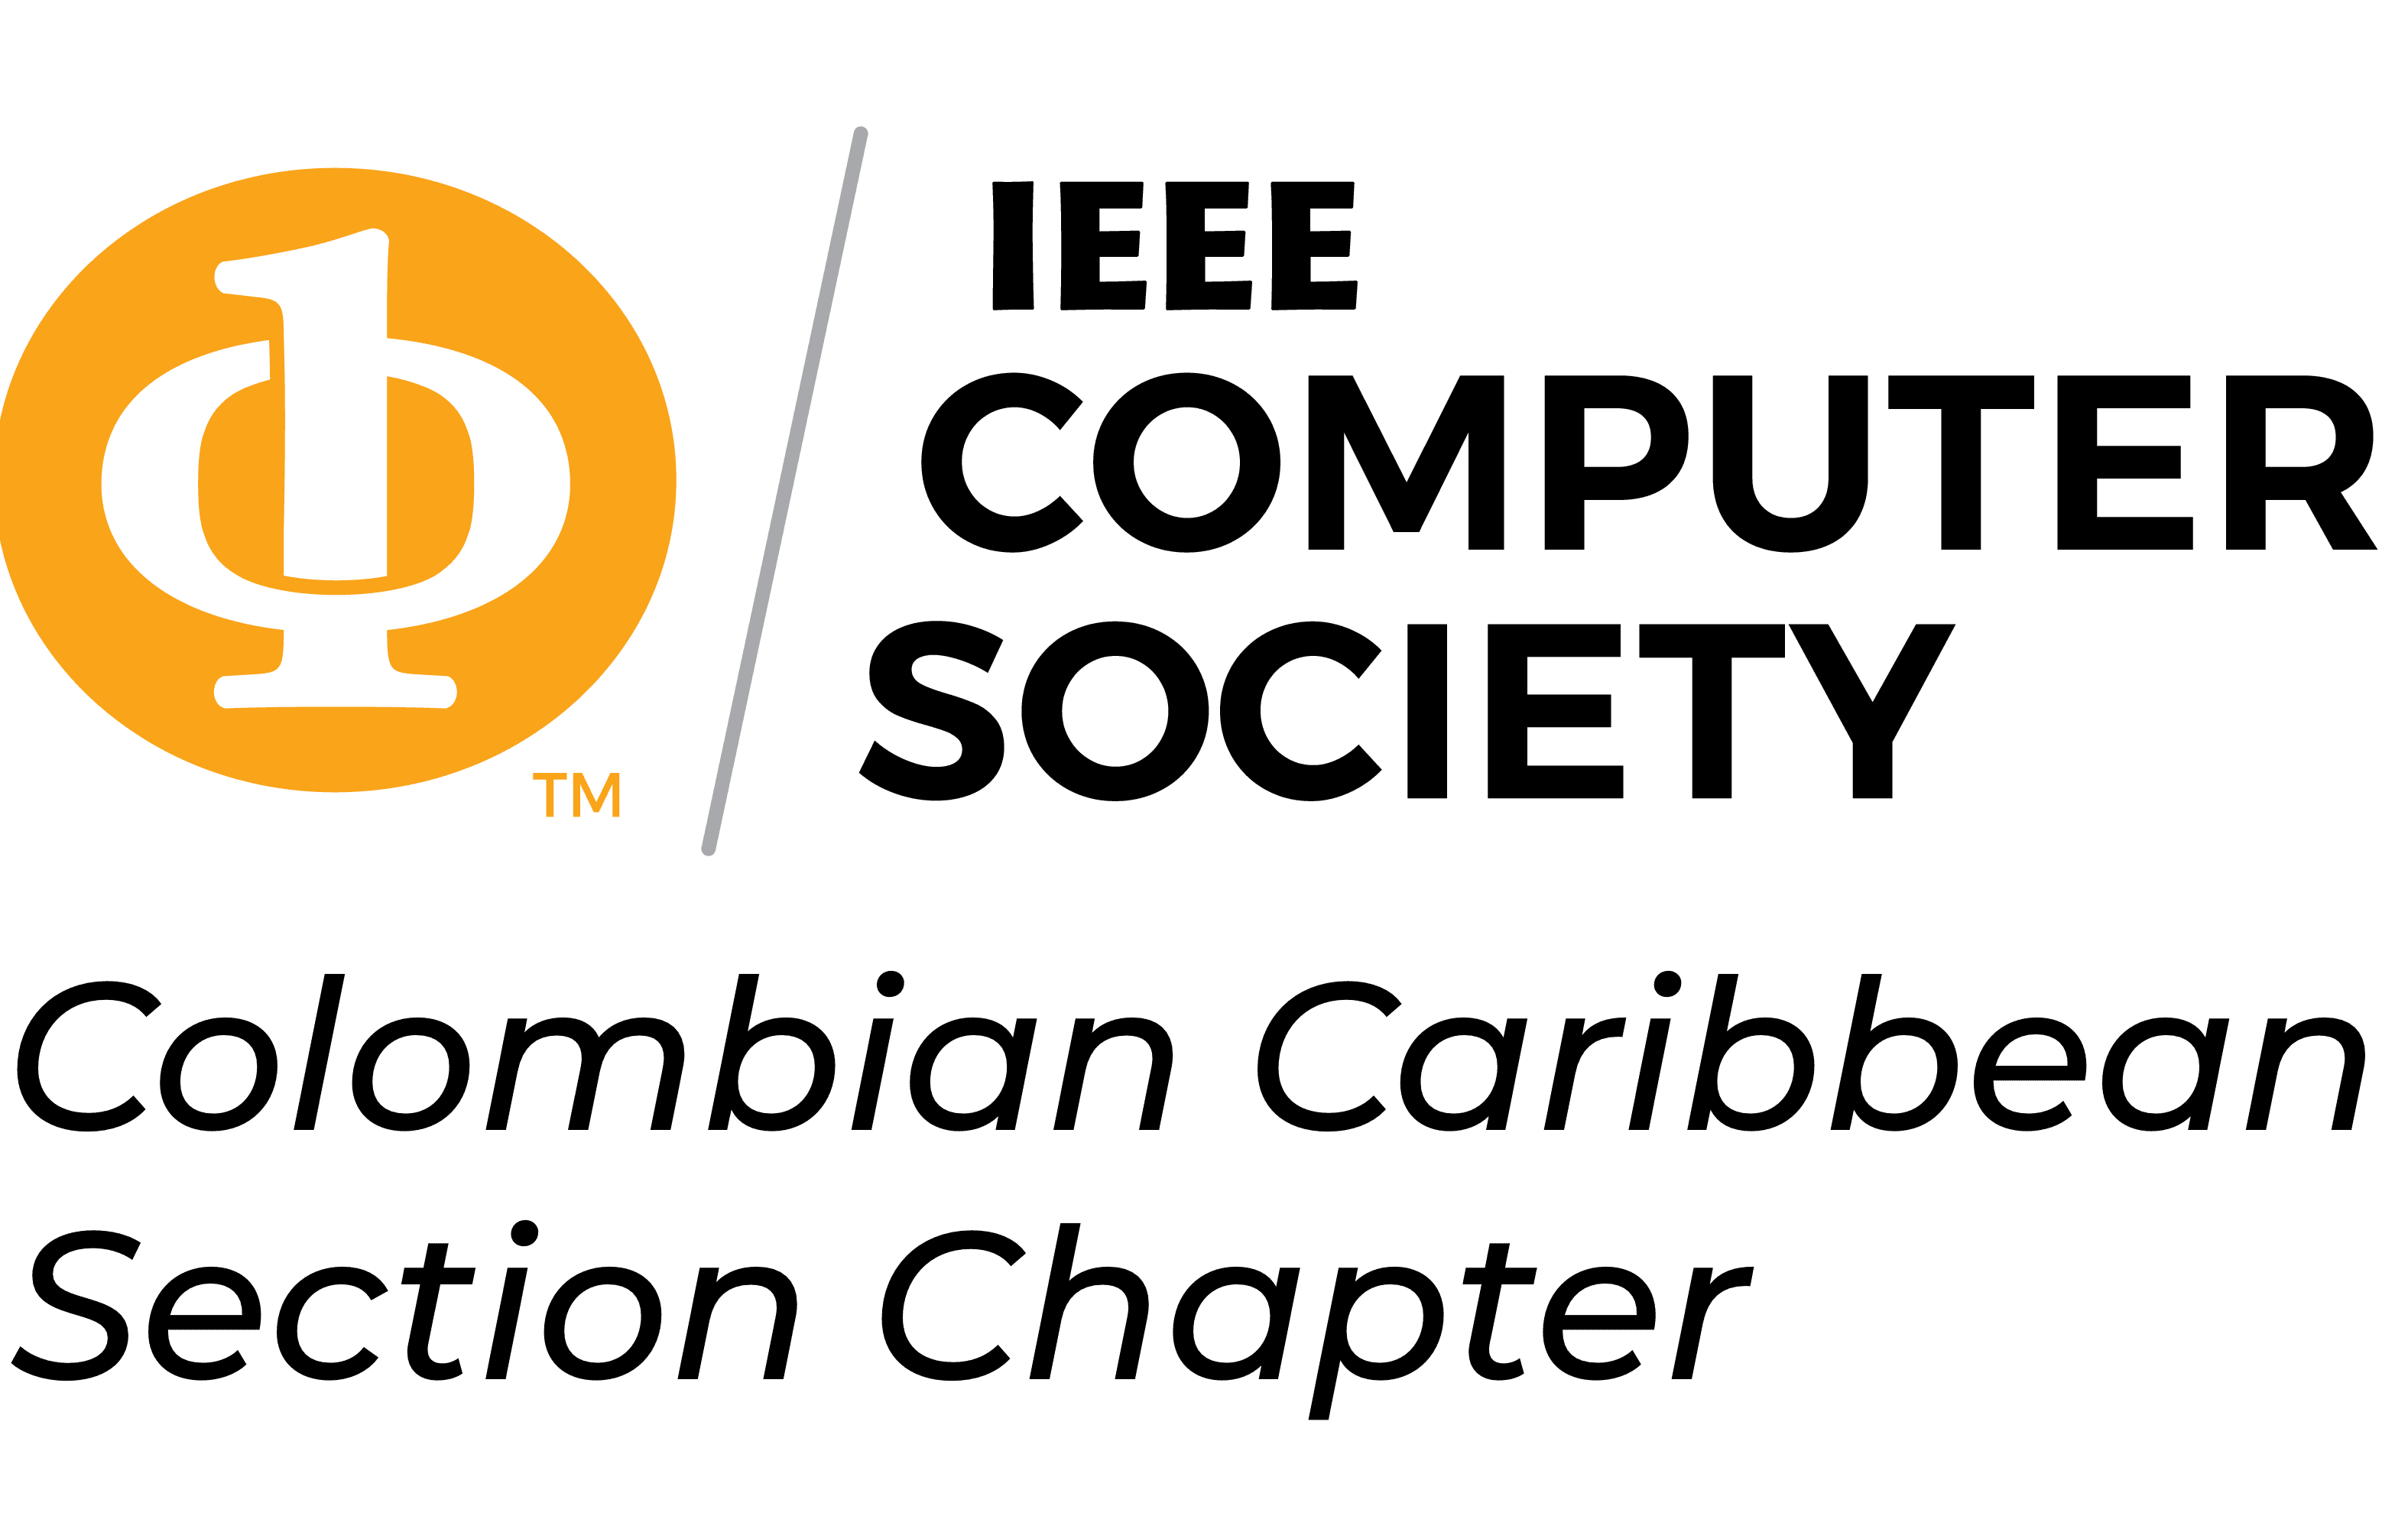 IEEE Computer Society del Caribe Colombiano logo